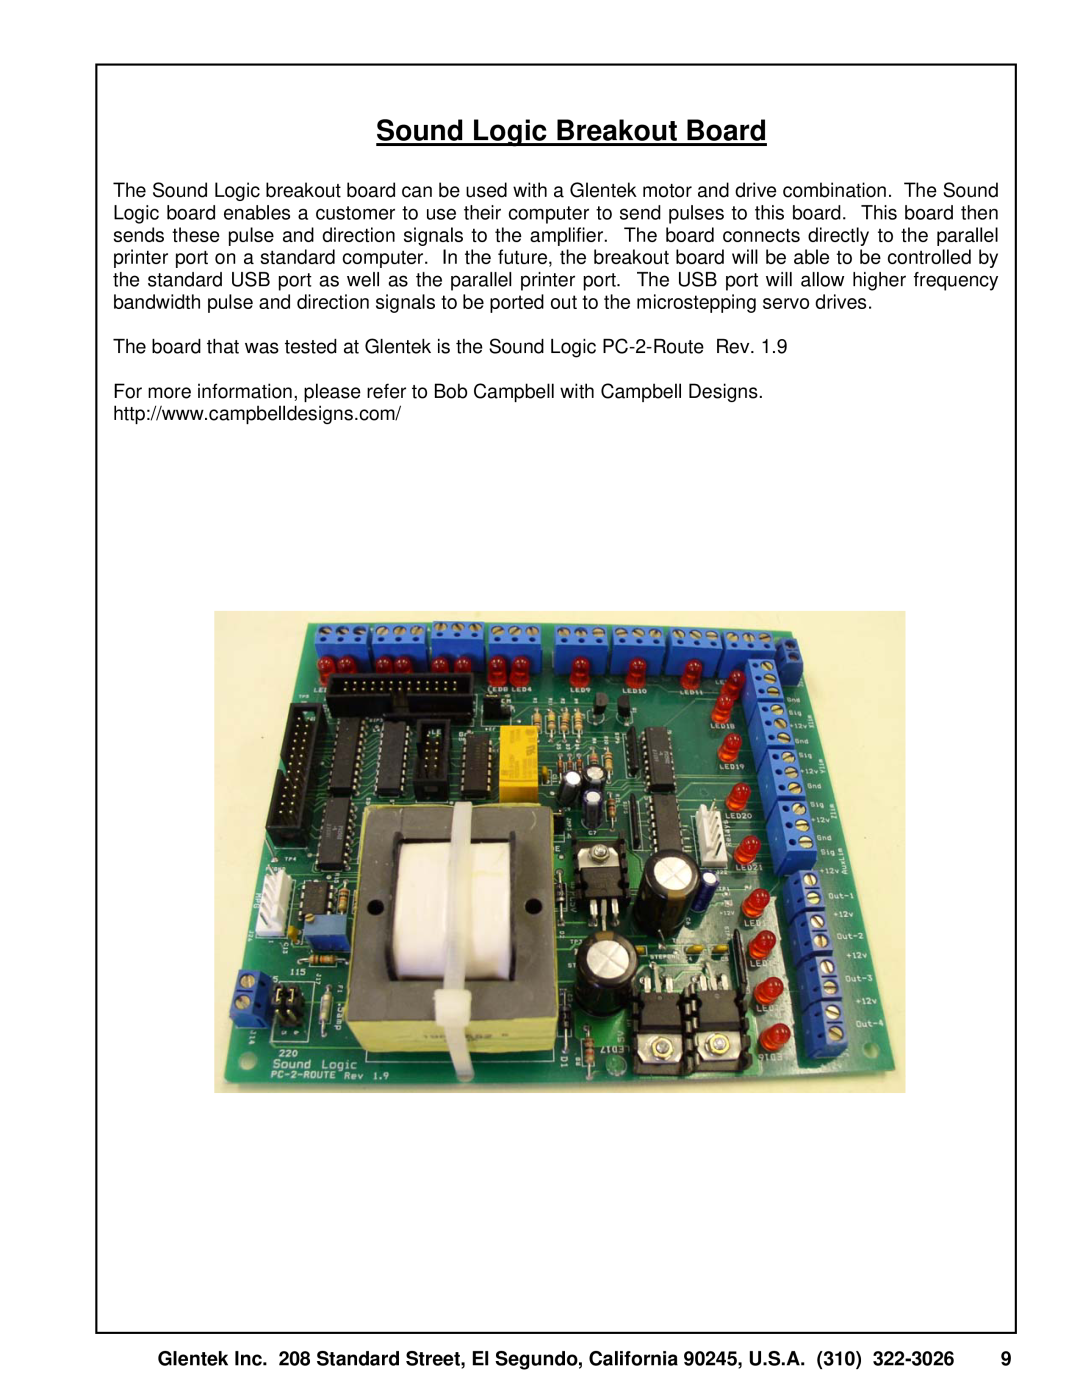 SMC Networks Amplifier manual Sound Logic Breakout Board 